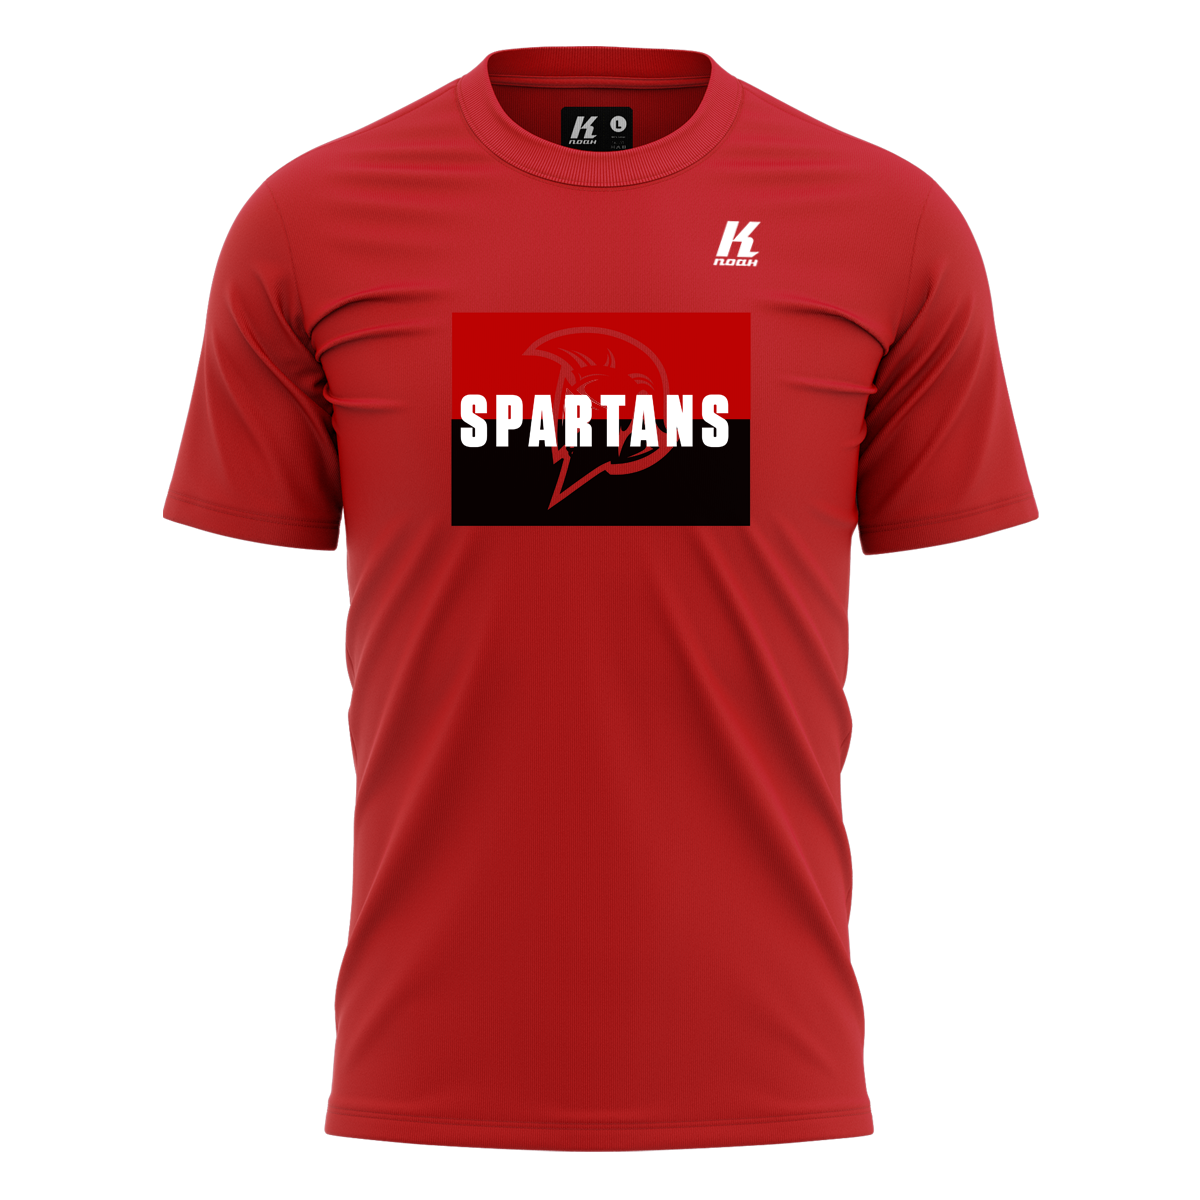 Spartans Fan Tee "Fanatic" red